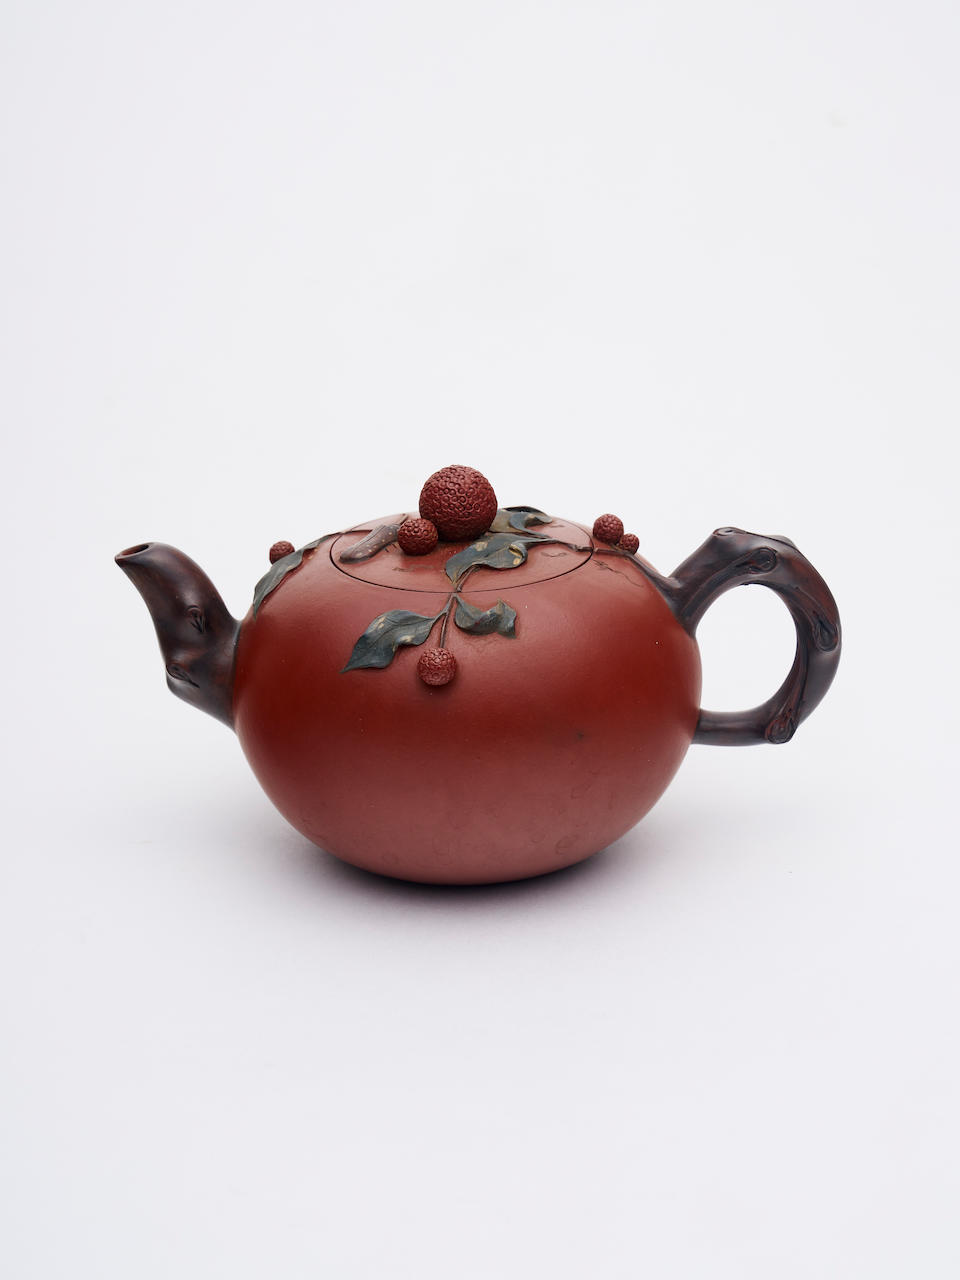 A yixing teapot Attributed to Jiang Rong (1919-2008)